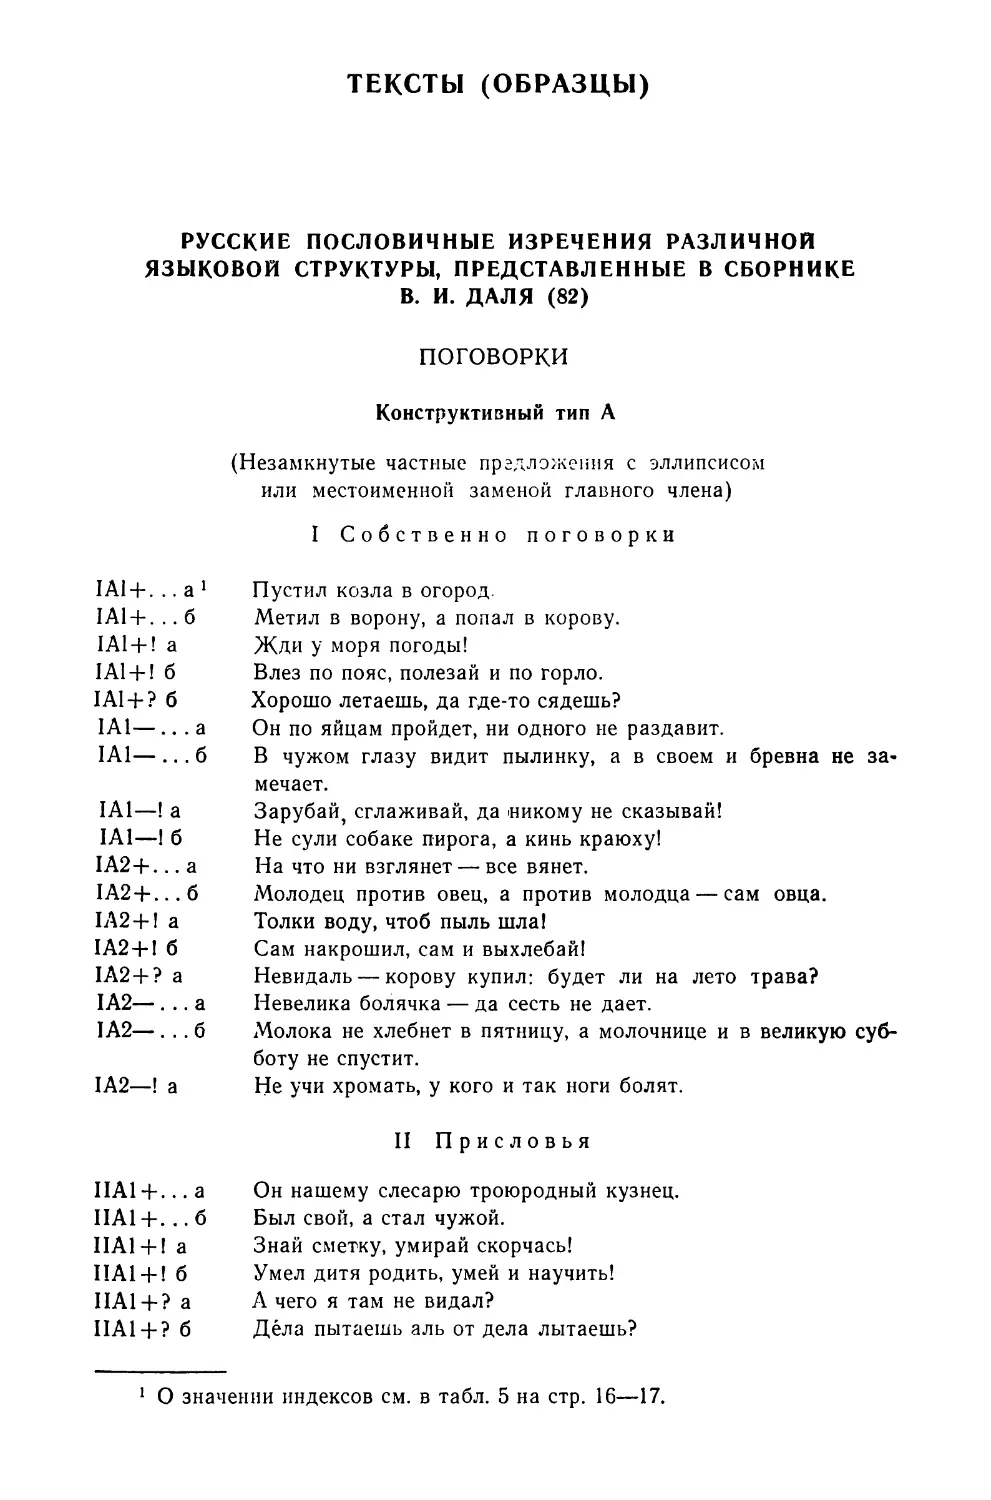 Русские пословичные изречения различной языковой структуры